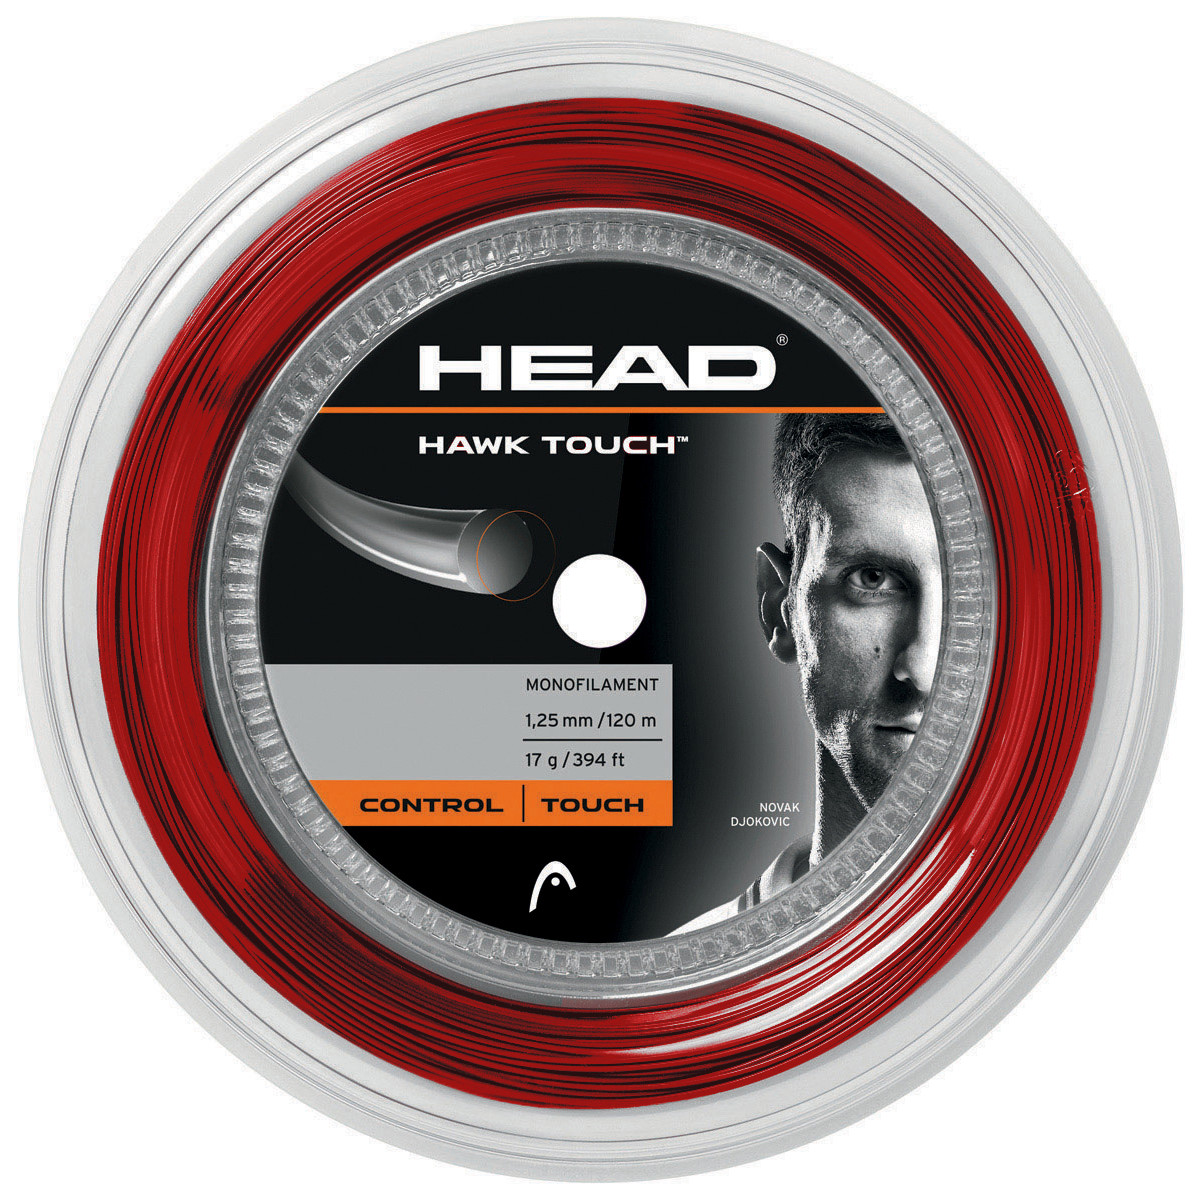 REEL HEAD HAWK TOUCH (120 METERS) - HEAD - String